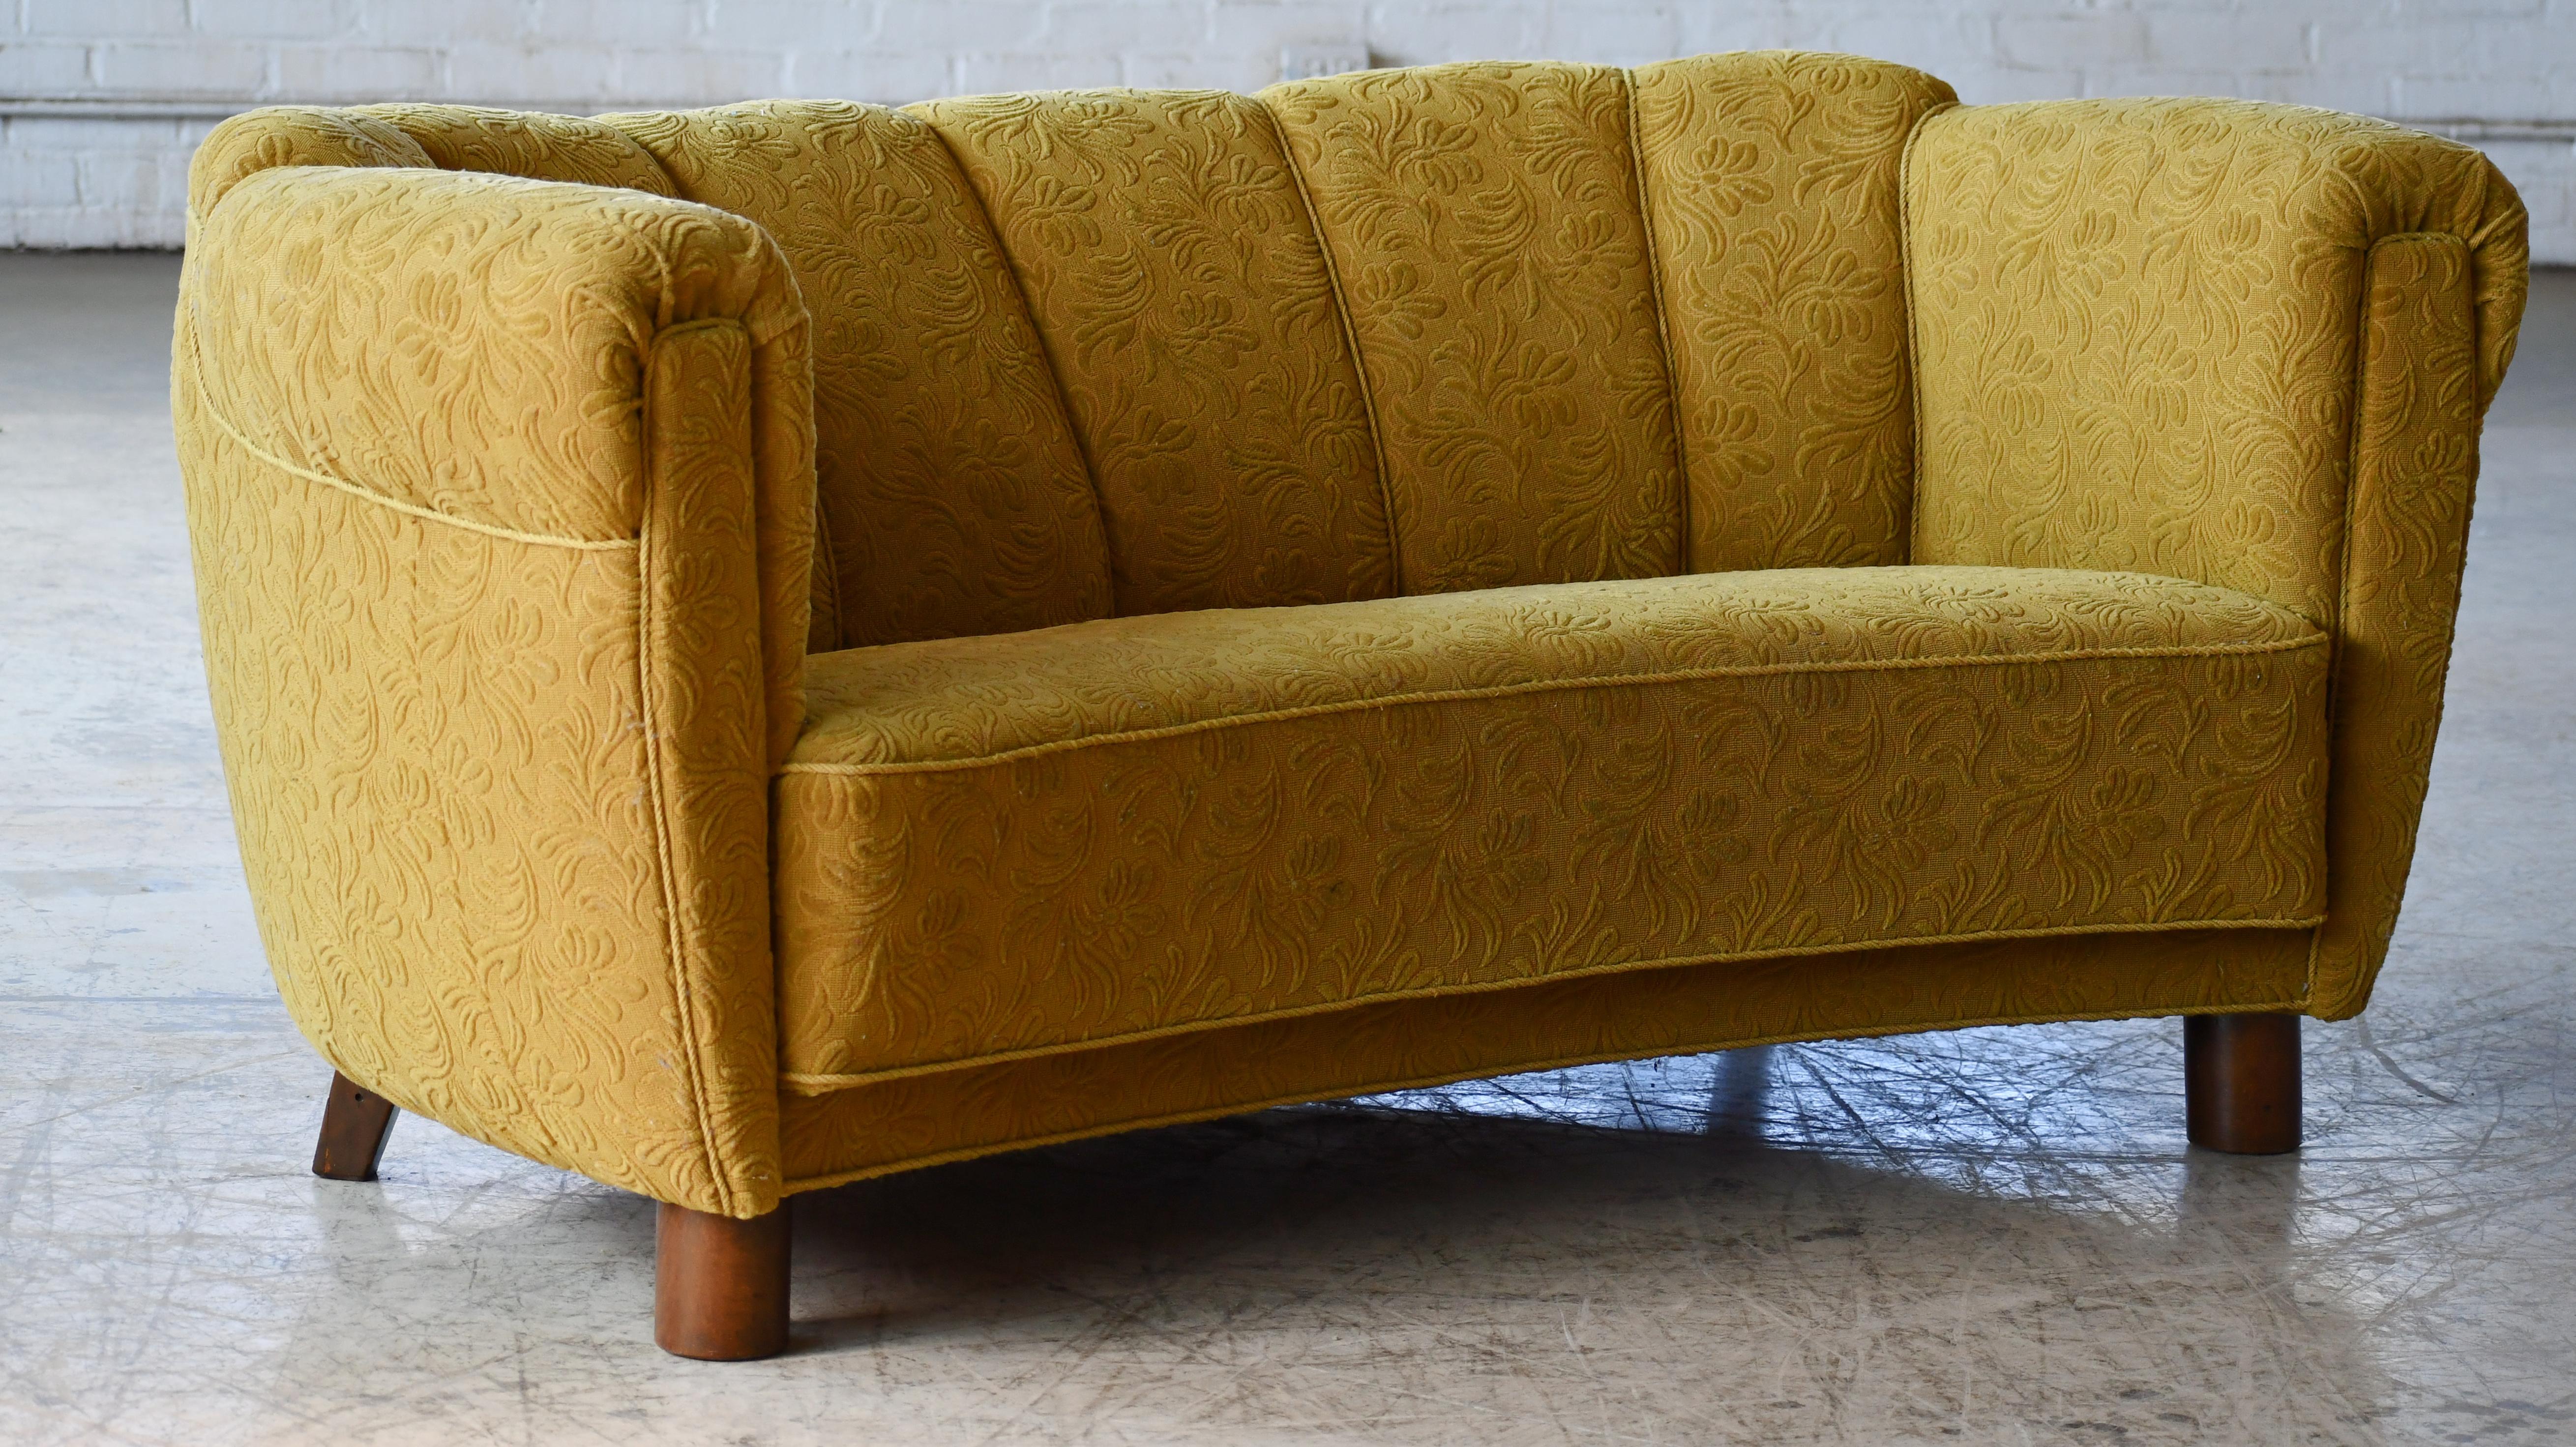 Schönes dänisches geschwungenes Sofa oder Bananensofa, wie die Dänen es nennen. Dieses Sofa ist ein wenig ungewöhnlich im Vergleich zu anderen aus der Epoche, da es eine erhöhte Rückenlehne hat, ein Detail, das manchmal in der Art Deco-Ära gesehen